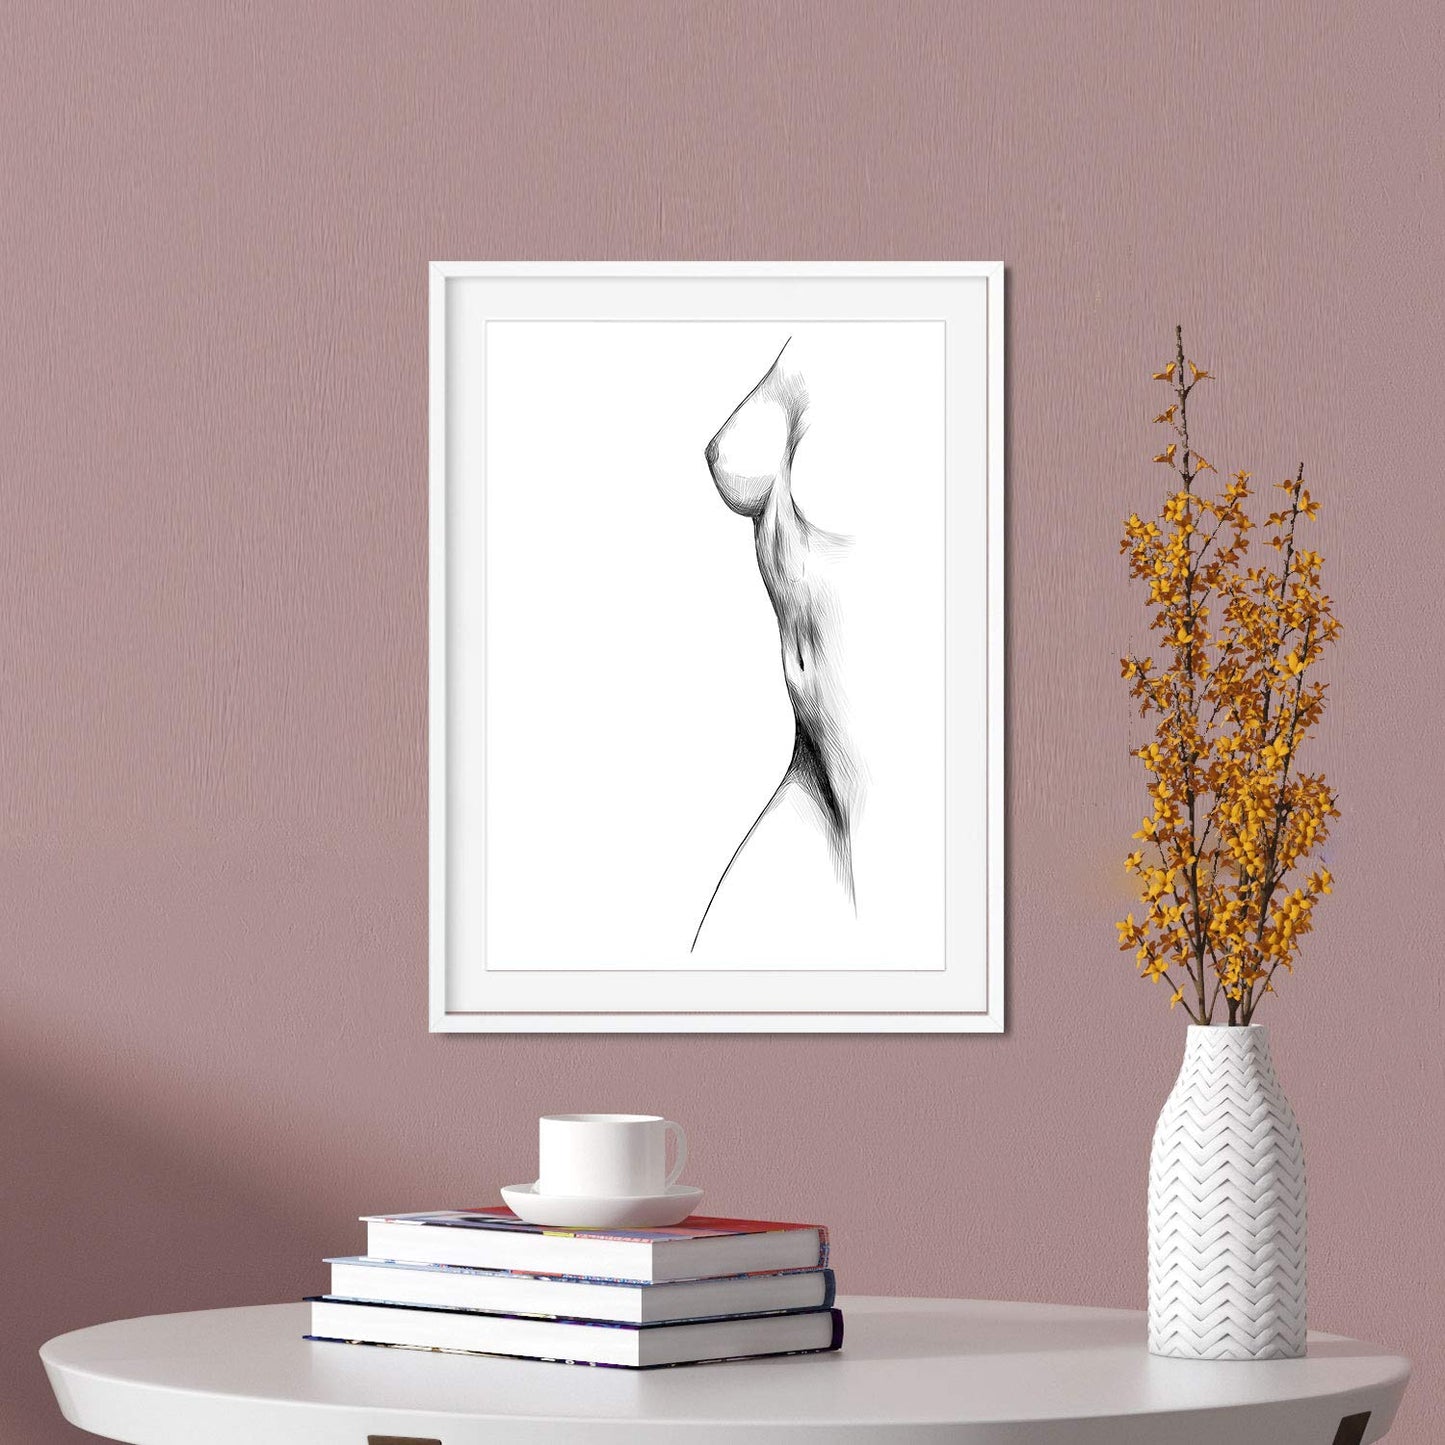 Set de posters eróticos. Láminas Brazos y piernas femeninas dibujadas con imágenes sensuales del cuerpo femenino.-Artwork-Nacnic-Nacnic Estudio SL